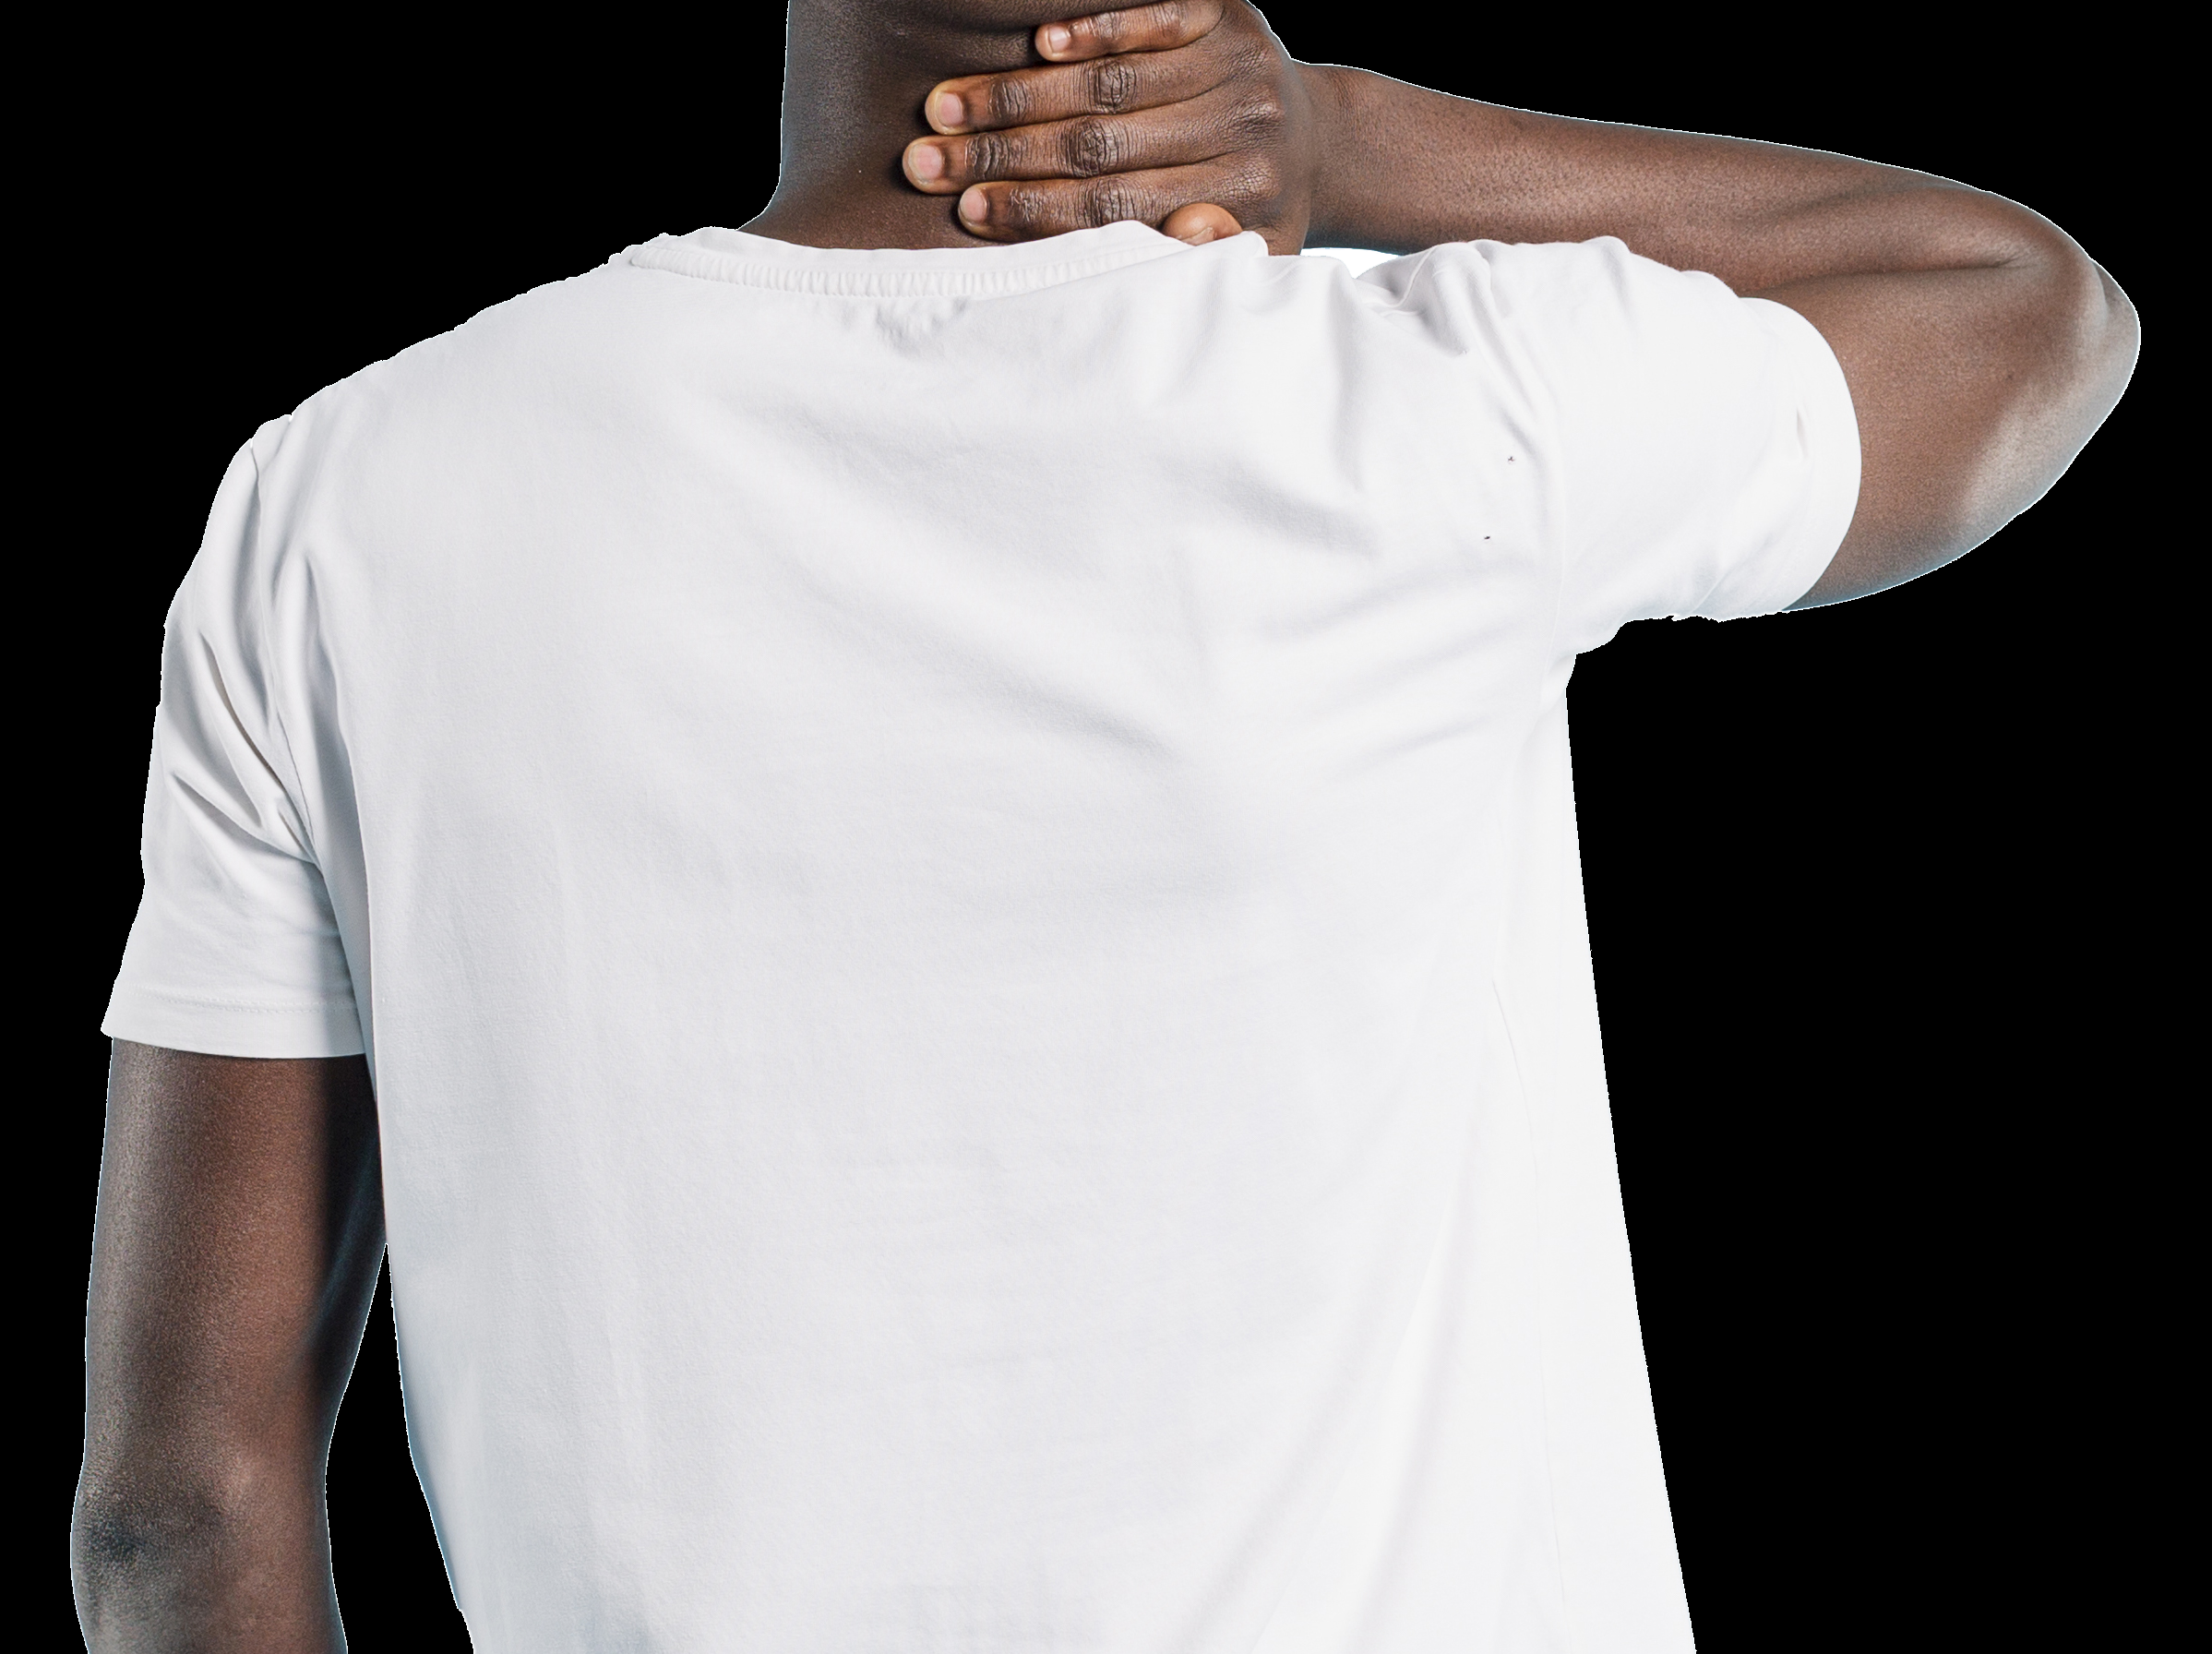 model wearing a white t-shirt. Rear view